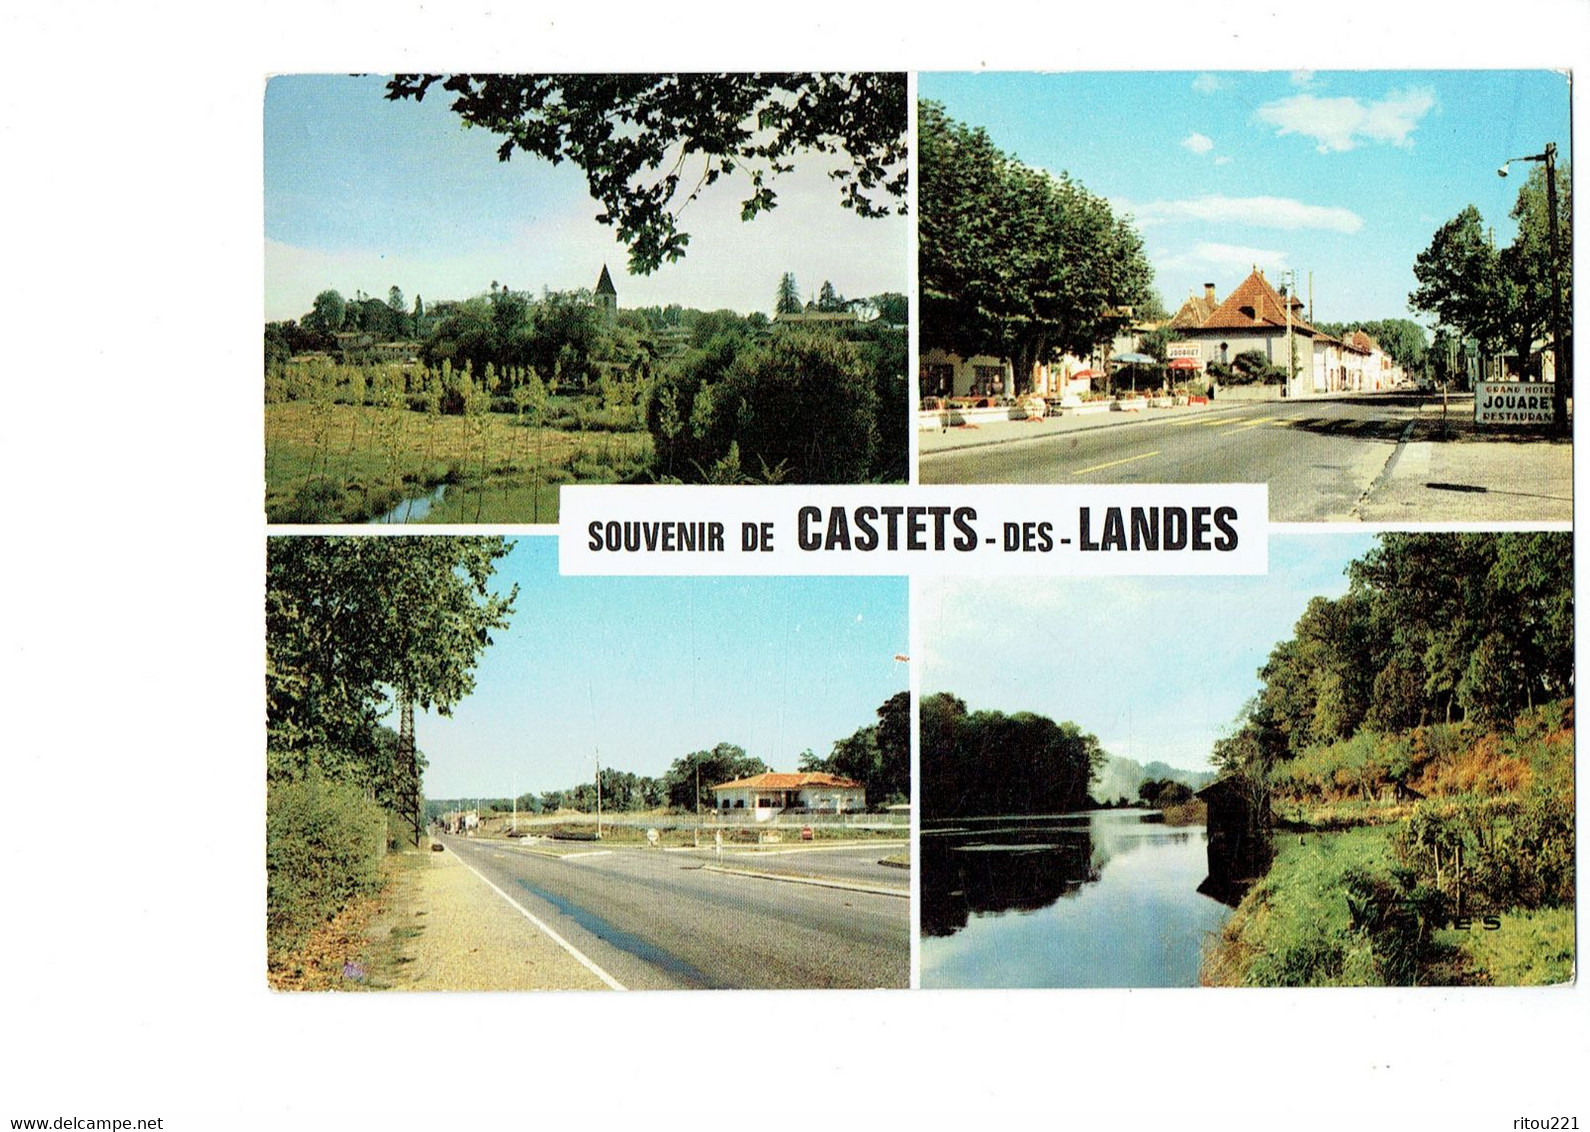 Cpm - 40 - Souvenir De Castets Des Landes - 1979 - Grand Hôtel JOUARET - - Castets